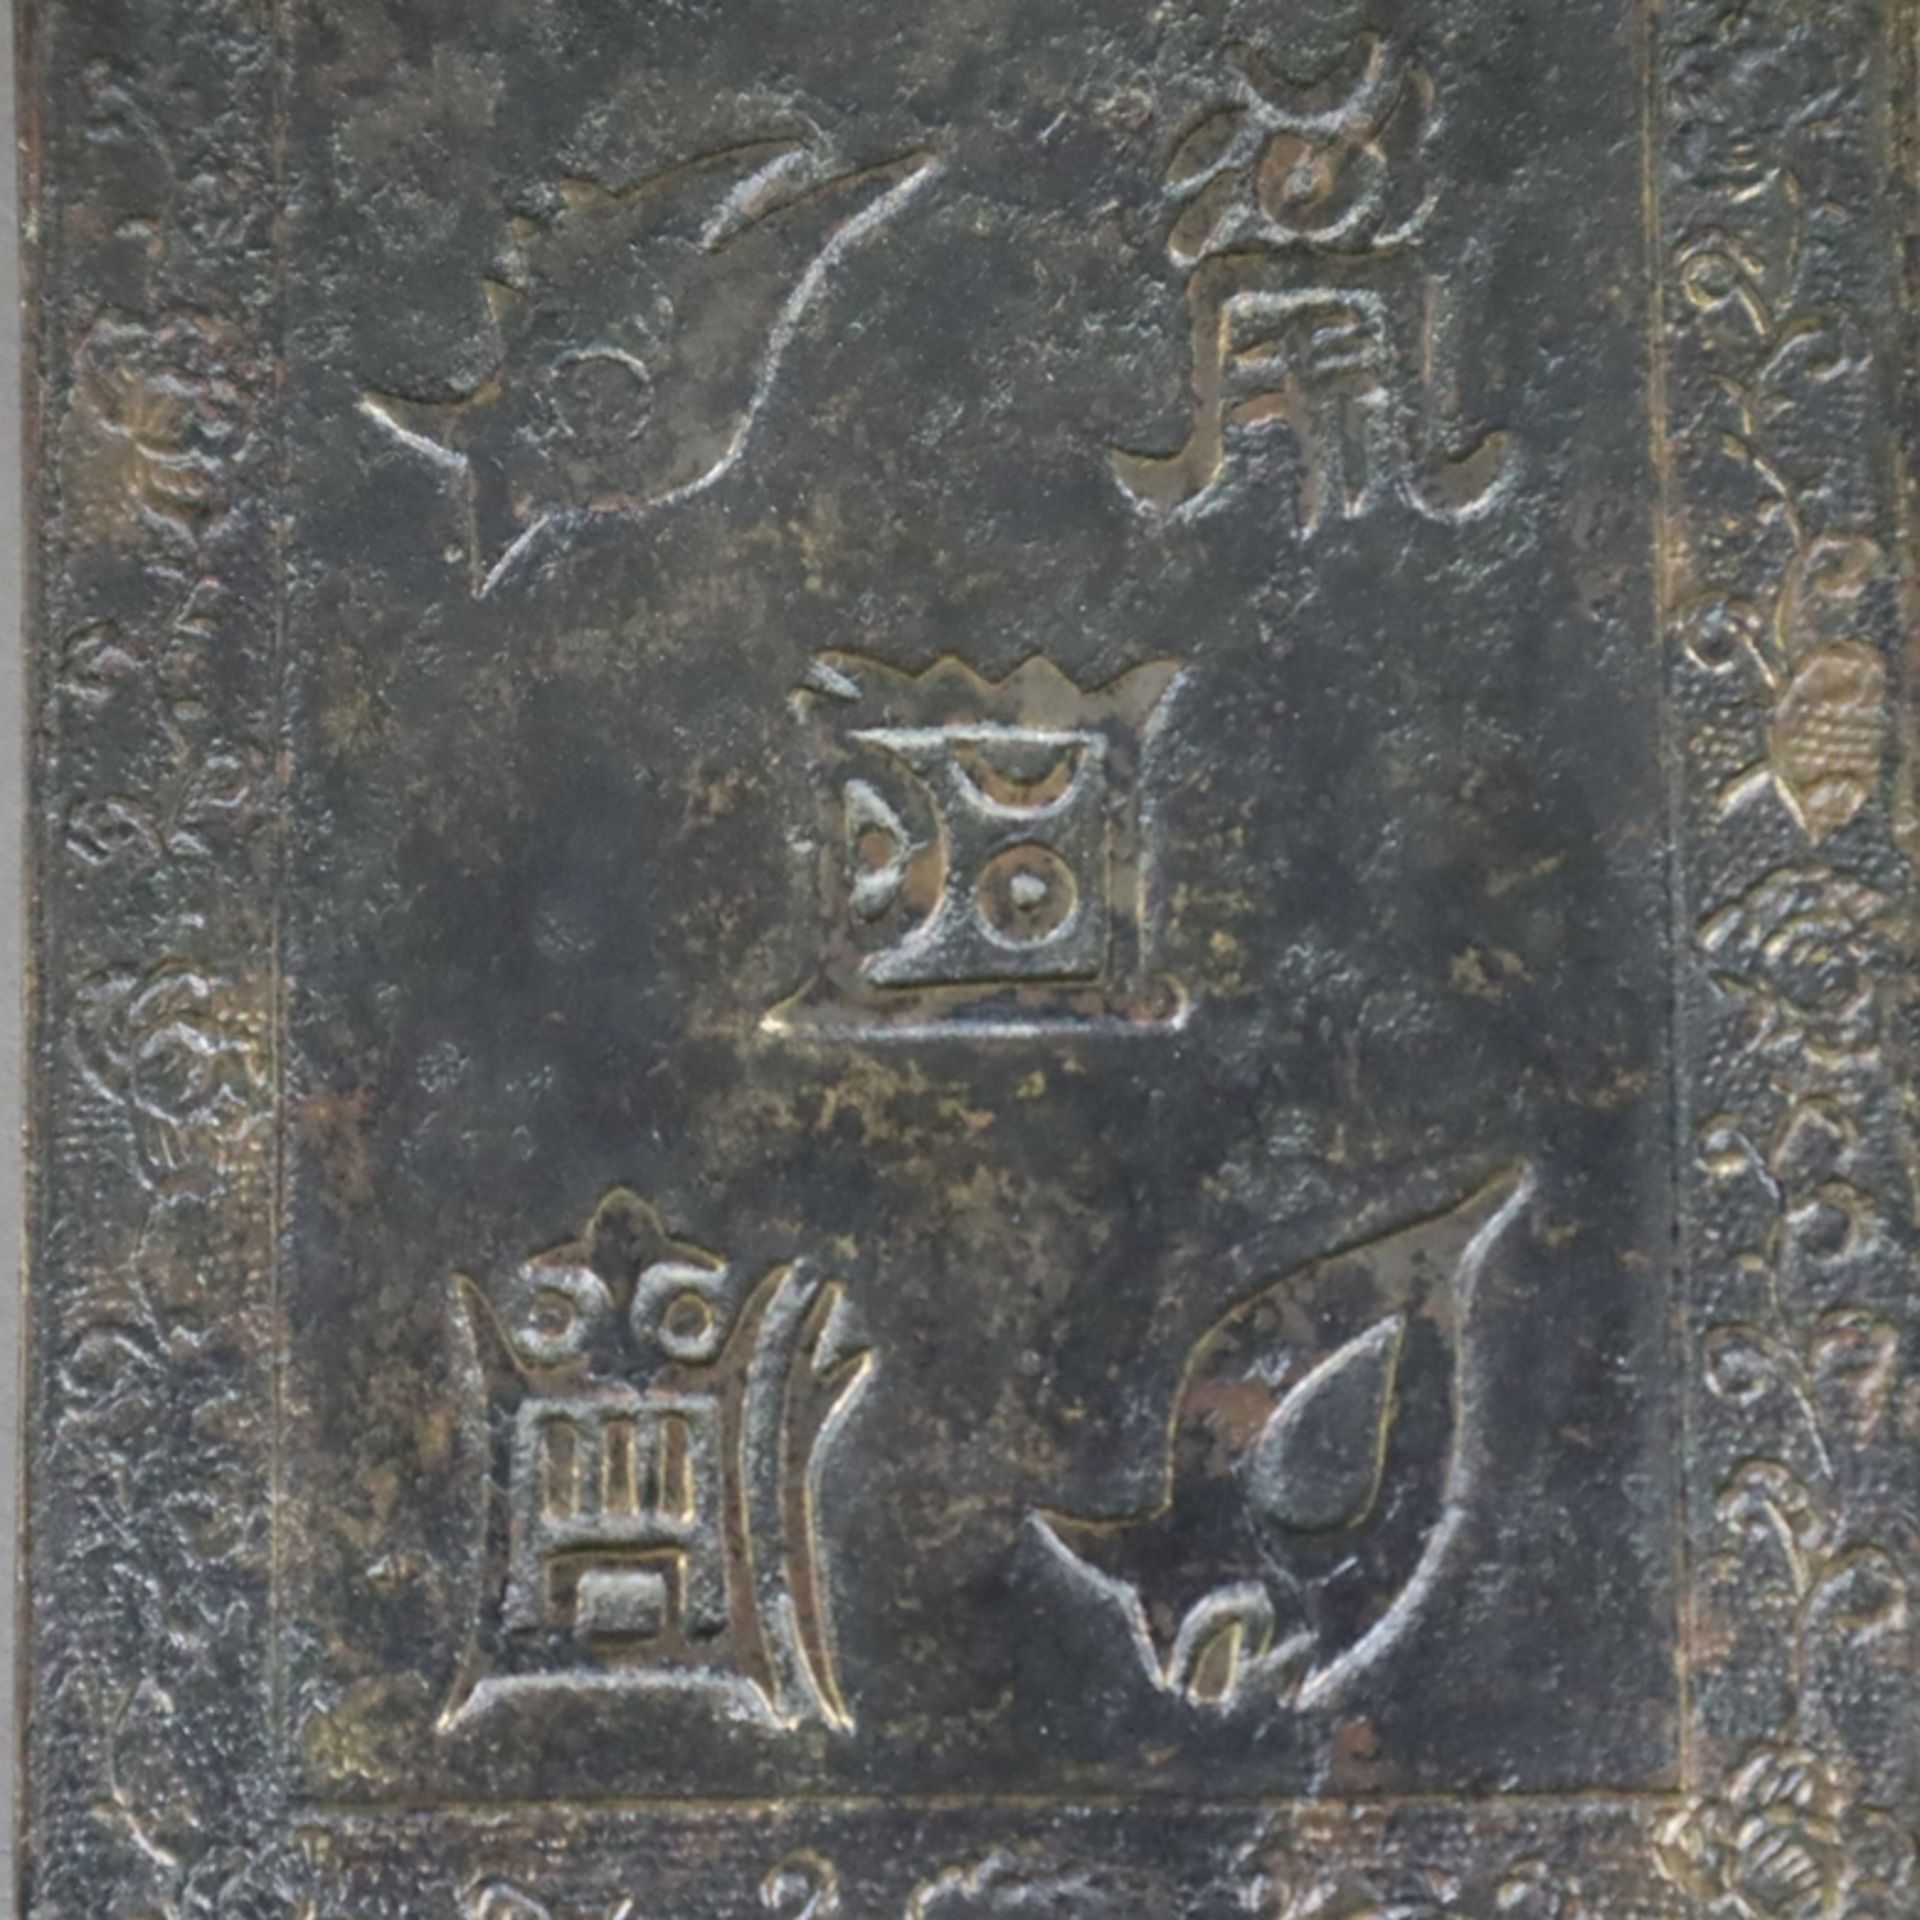 Handspiegel aus Bronze - Japan, Bronze mit dunkler Patina, zierreliefiert, gegossene Signaturkartus - Image 3 of 5